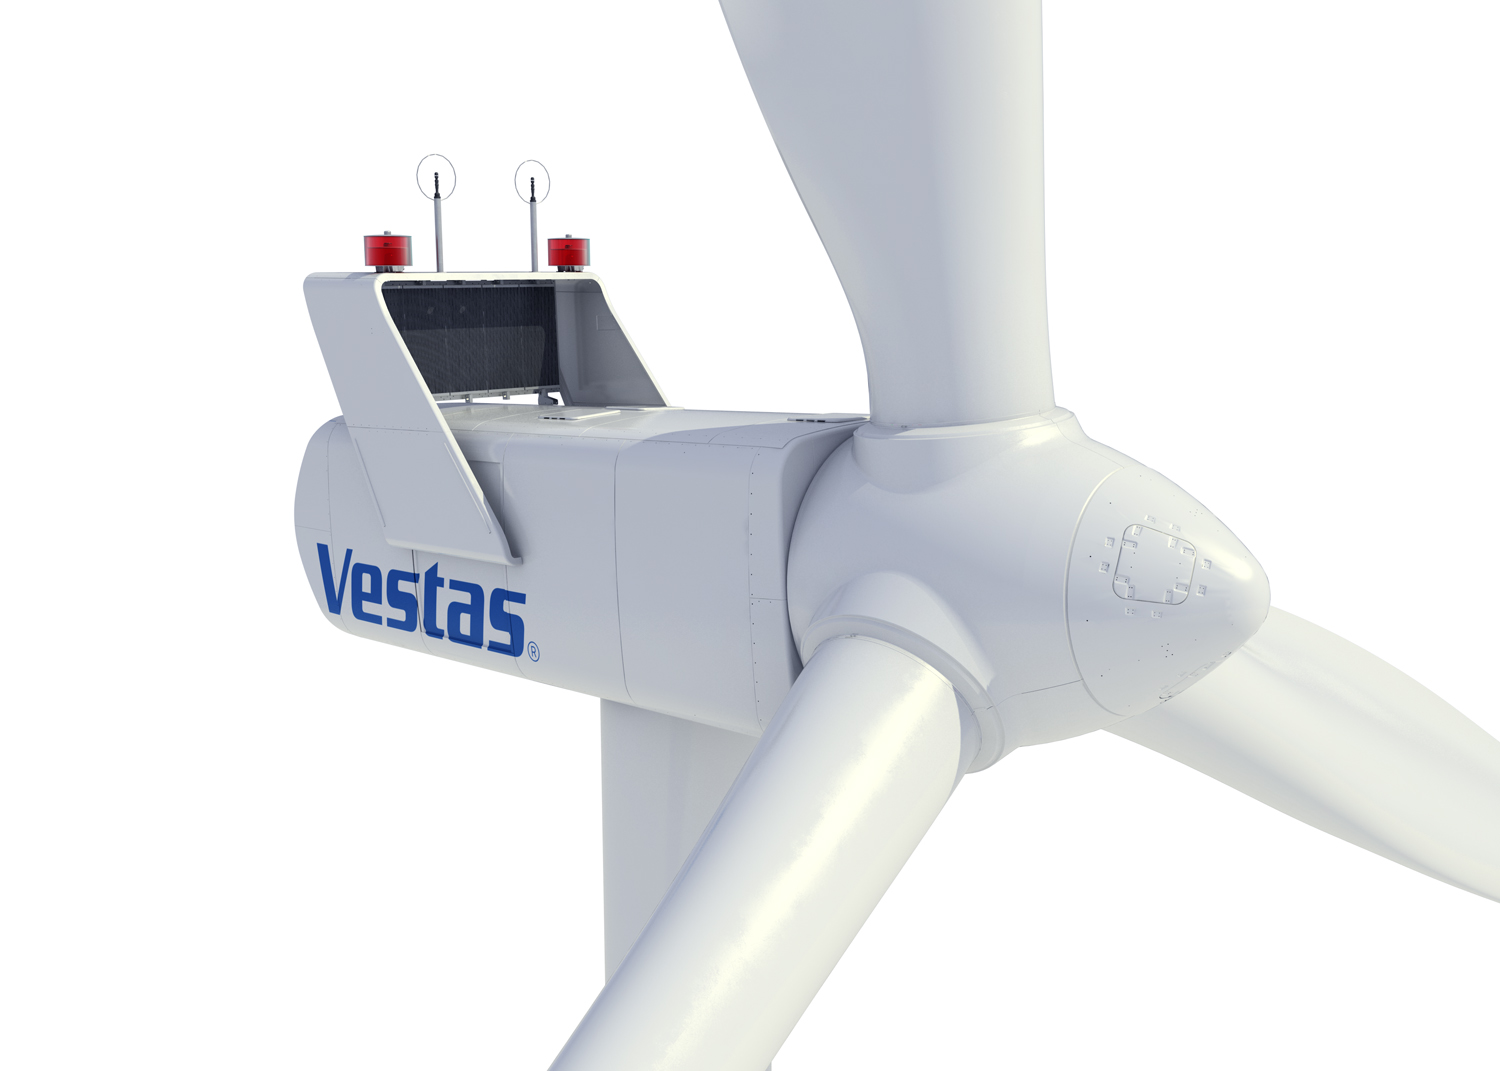 La eólica Vestas introduce los aerogeneradores EnVentus | REVE Actualidad  del sector eólico en España y en el mundo